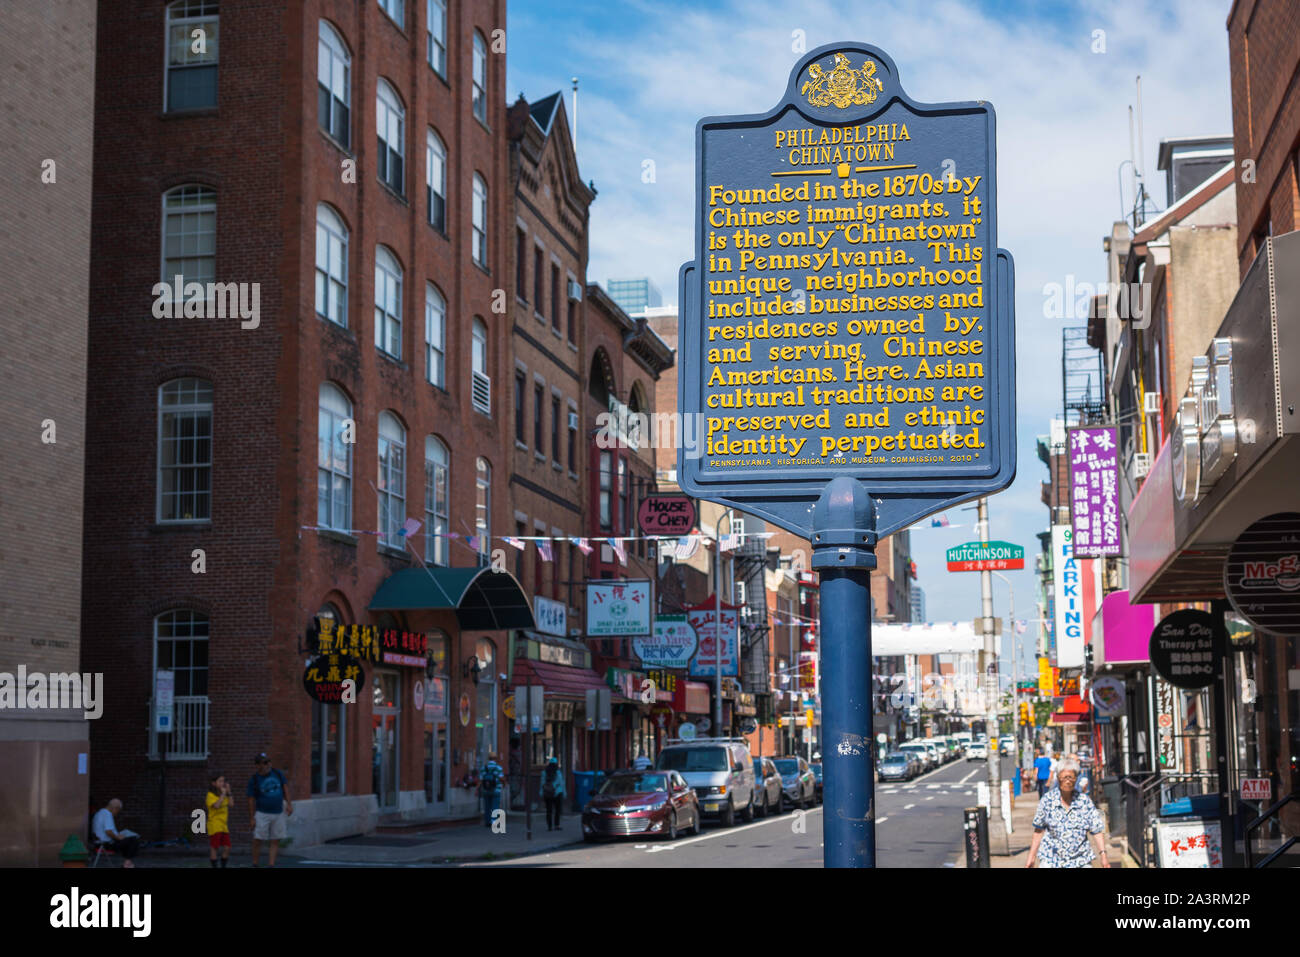 Philadelphia Chinatown, Blick auf die Philadelphia City Heritage Zeichen gelegen am Eingang der Chinatown Gegend der Stadt, Pennsylvania, PA, USA Stockfoto